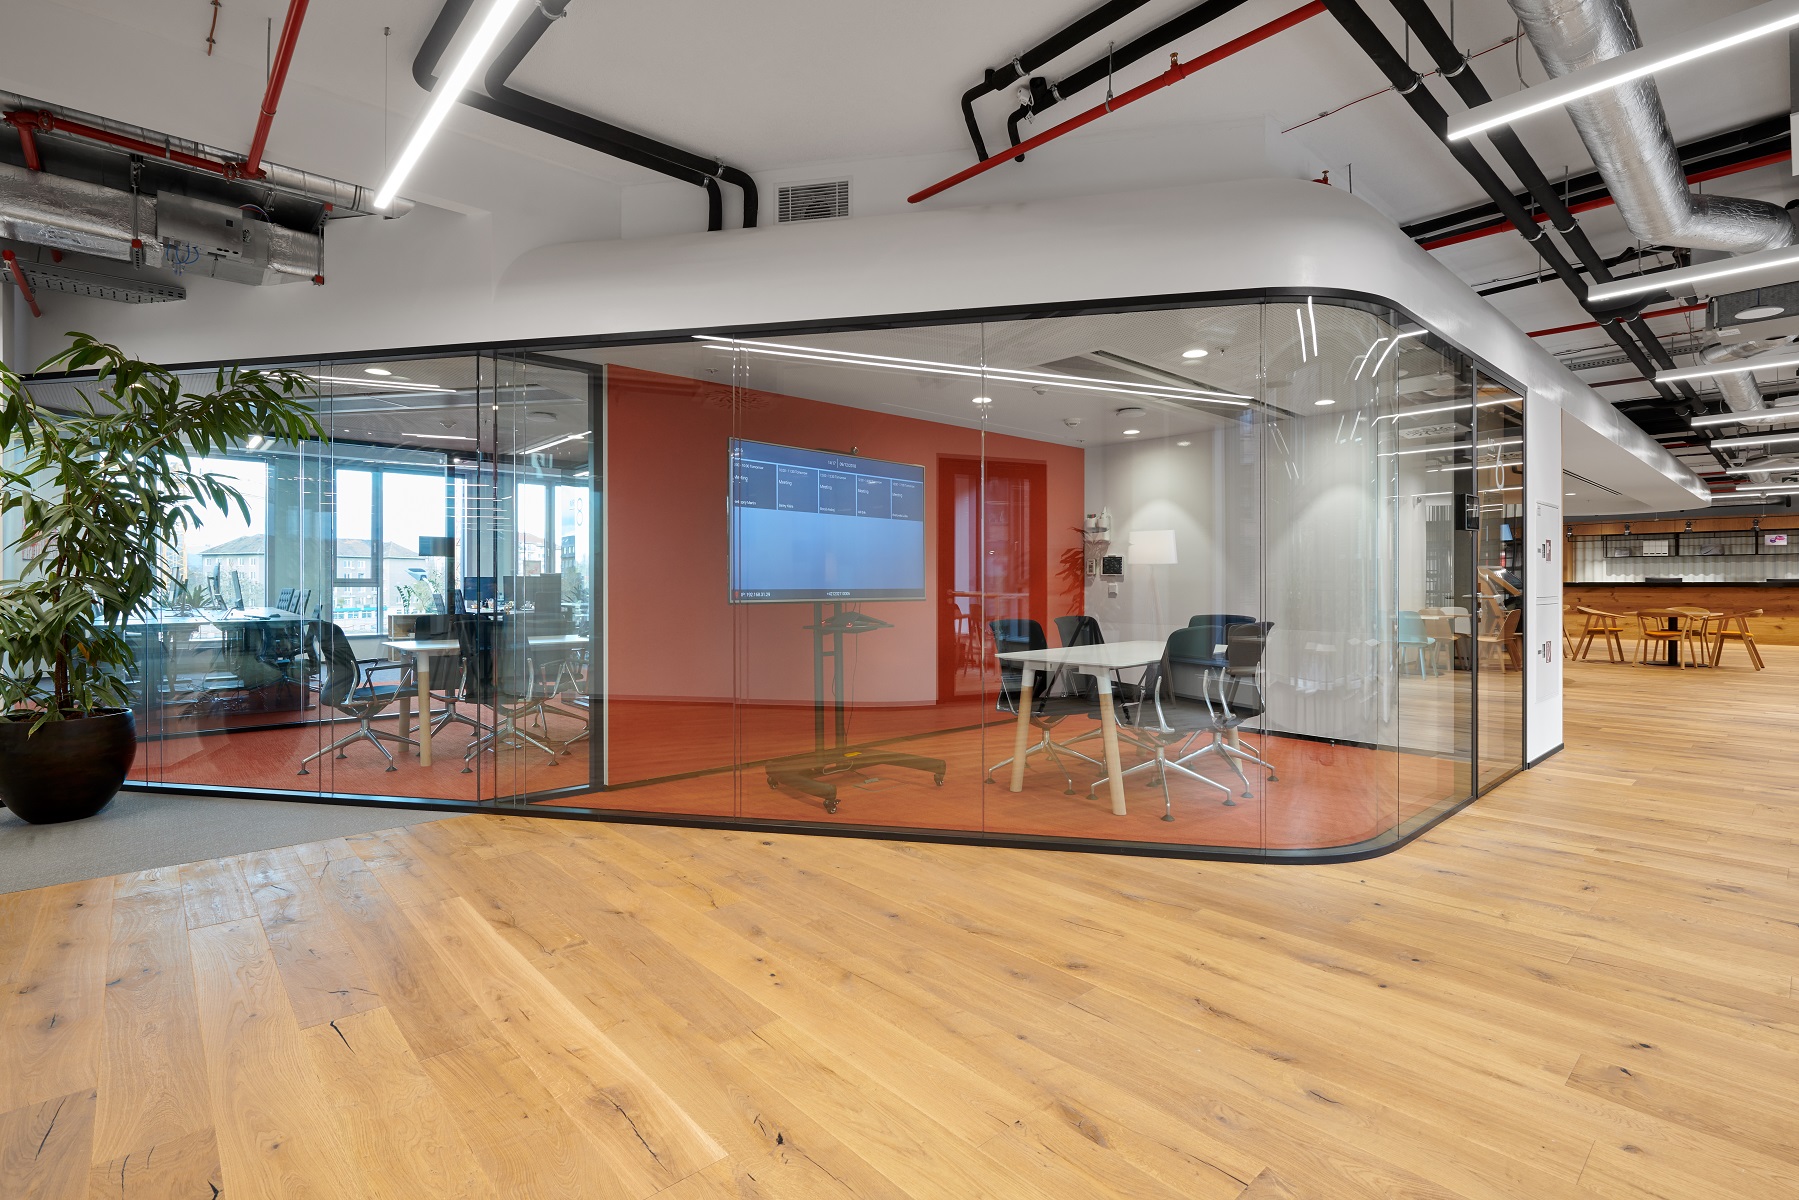 Požiadavky na kancelárske priestory sú dnes rôzne v závislosti od typu a veľkosti firmy, ale aj od rôznych cieľov organizácií. Kancelárske priestory spoločnosti HB Reavis.